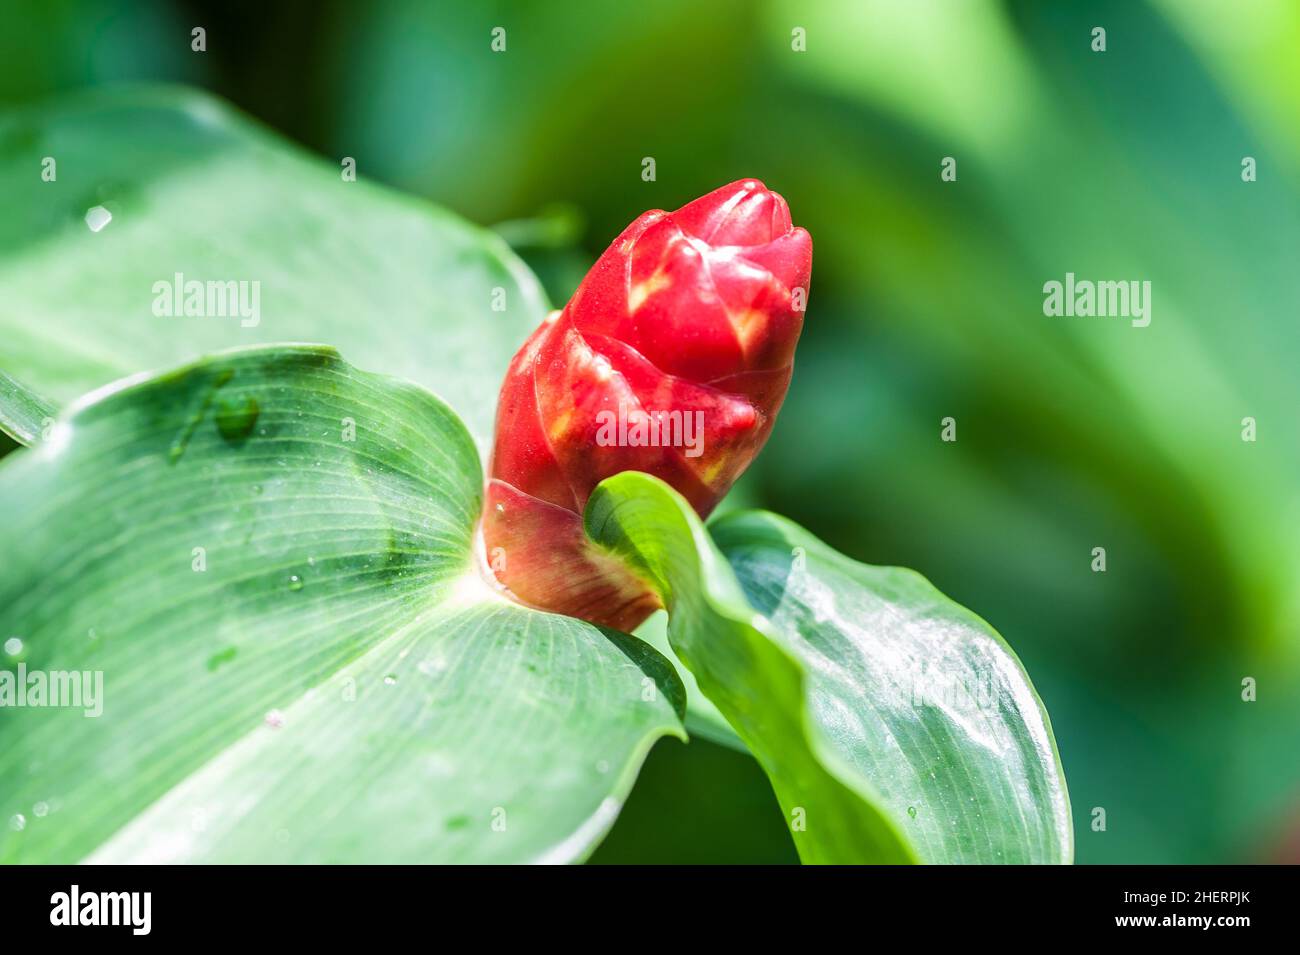 Cotus woodsonii fleur dans le jardin, fleur tropicale rouge.Gros plan Banque D'Images